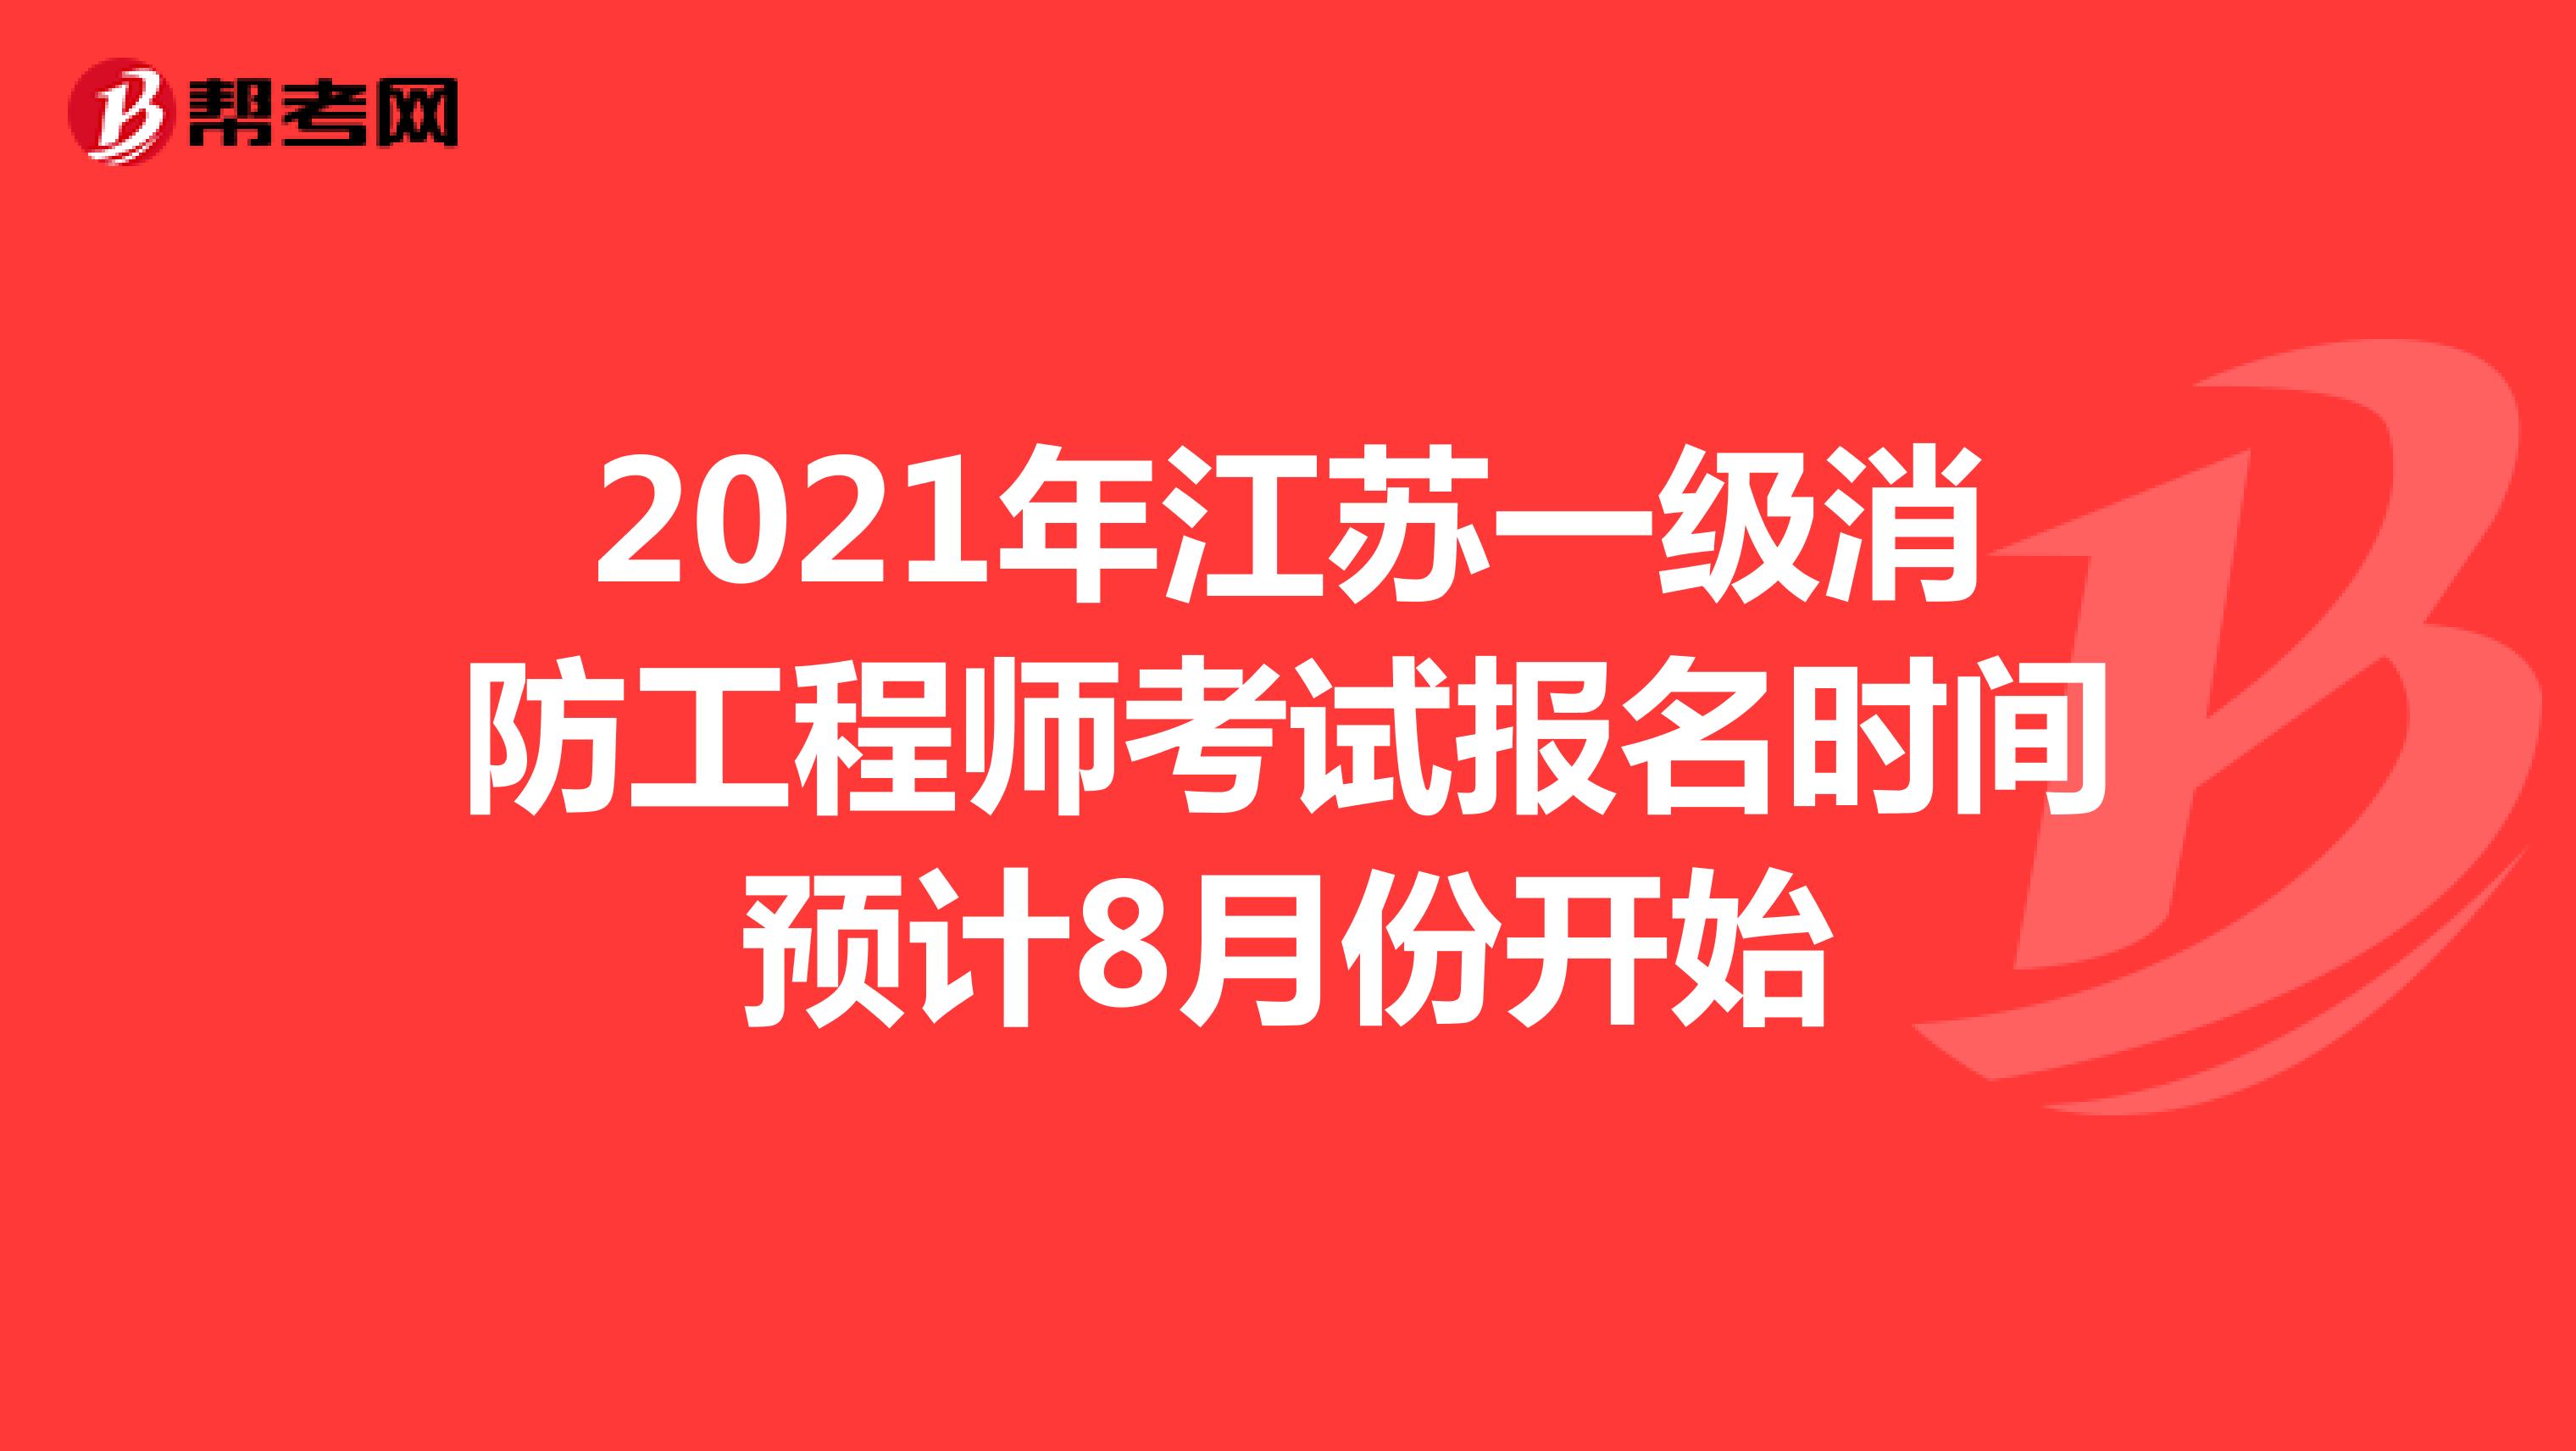 2021年江苏一级消防工程师考试报名时间预计8月份开始